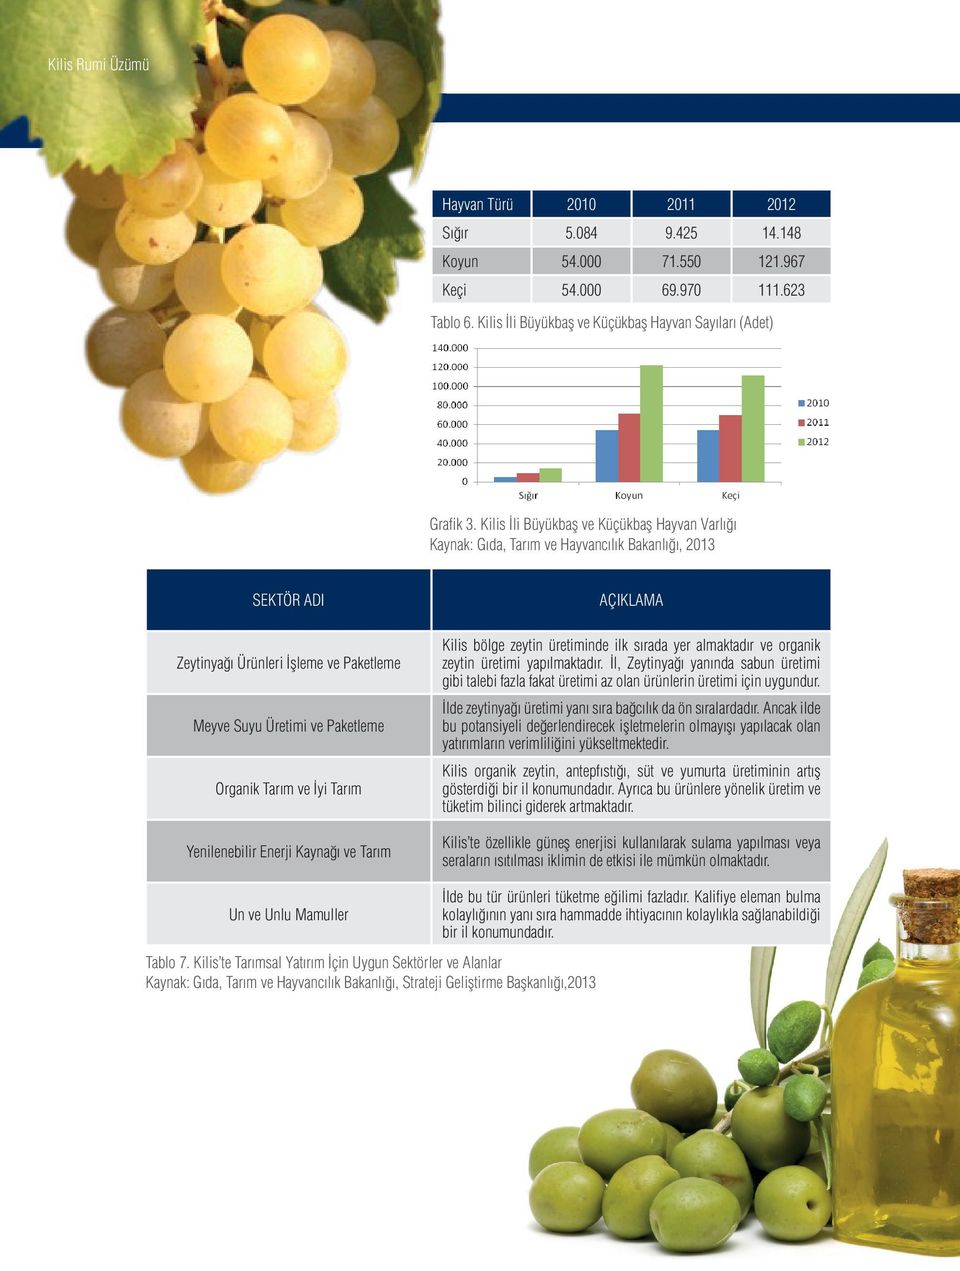 İyi Tarım Yenilenebilir Enerji Kaynağı ve Tarım Un ve Unlu Mamuller AÇIKLAMA Kilis bölge zeytin üretiminde ilk sırada yer almaktadır ve organik zeytin üretimi yapılmaktadır.